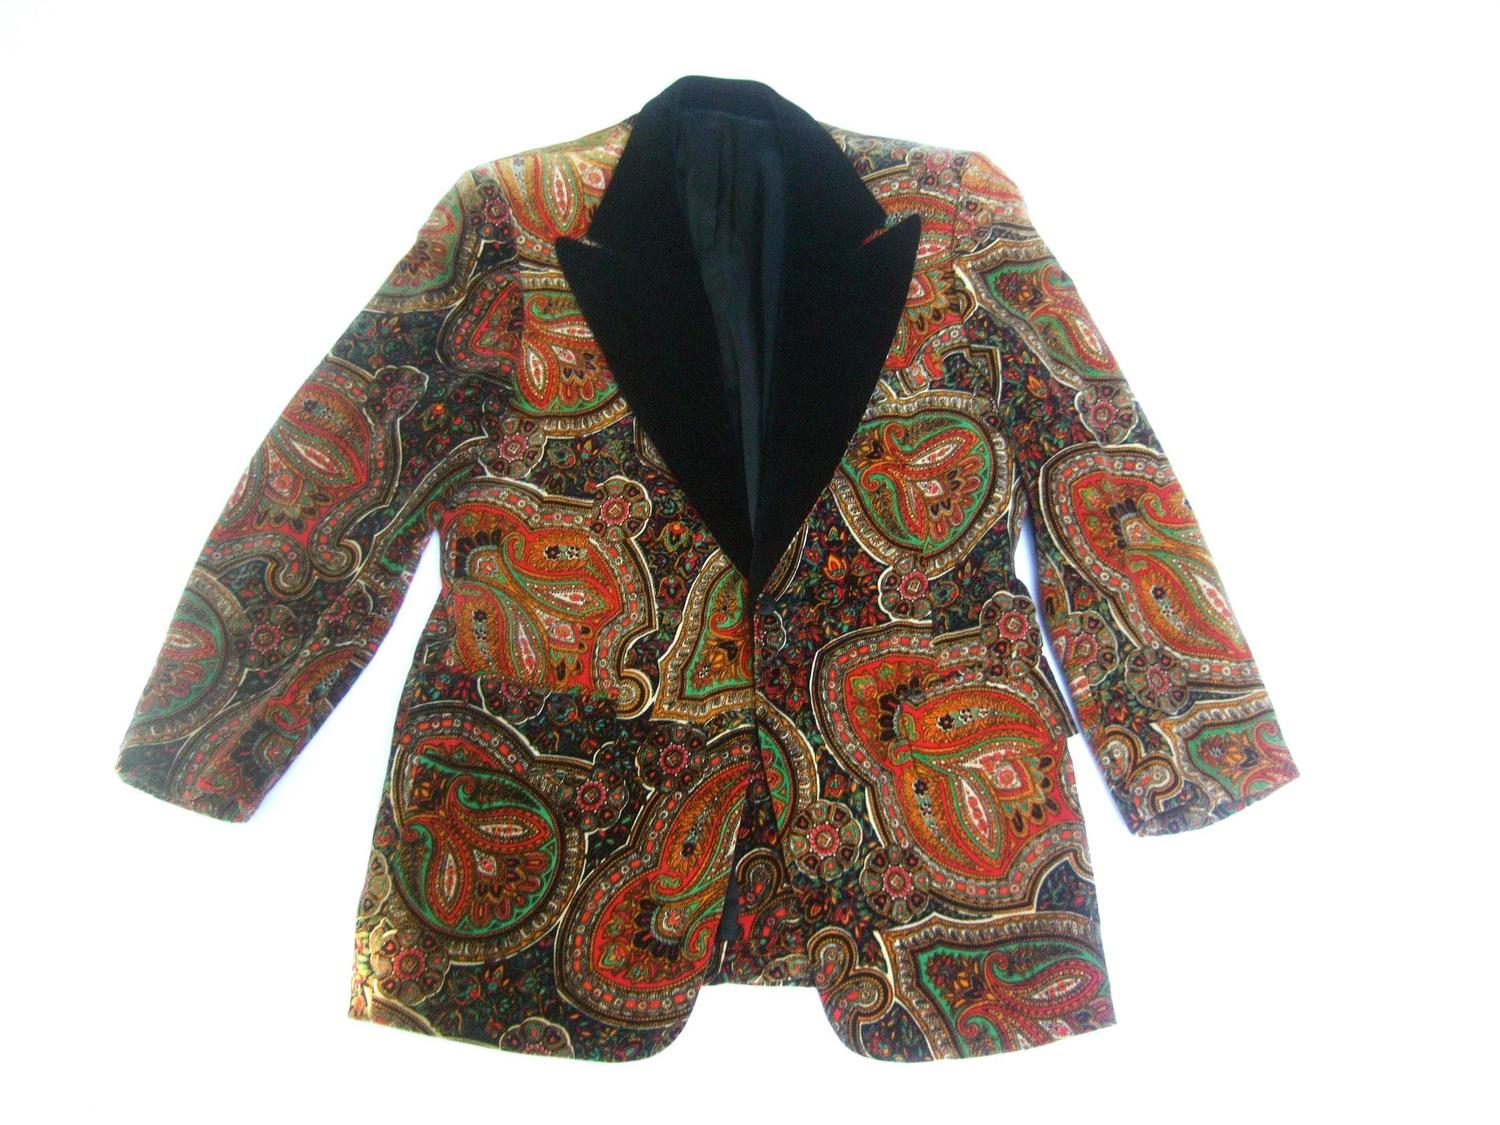 Men's Paisley Cotton Velvet Tuxedo Jacket C 1970s For Sale at 1stdibs